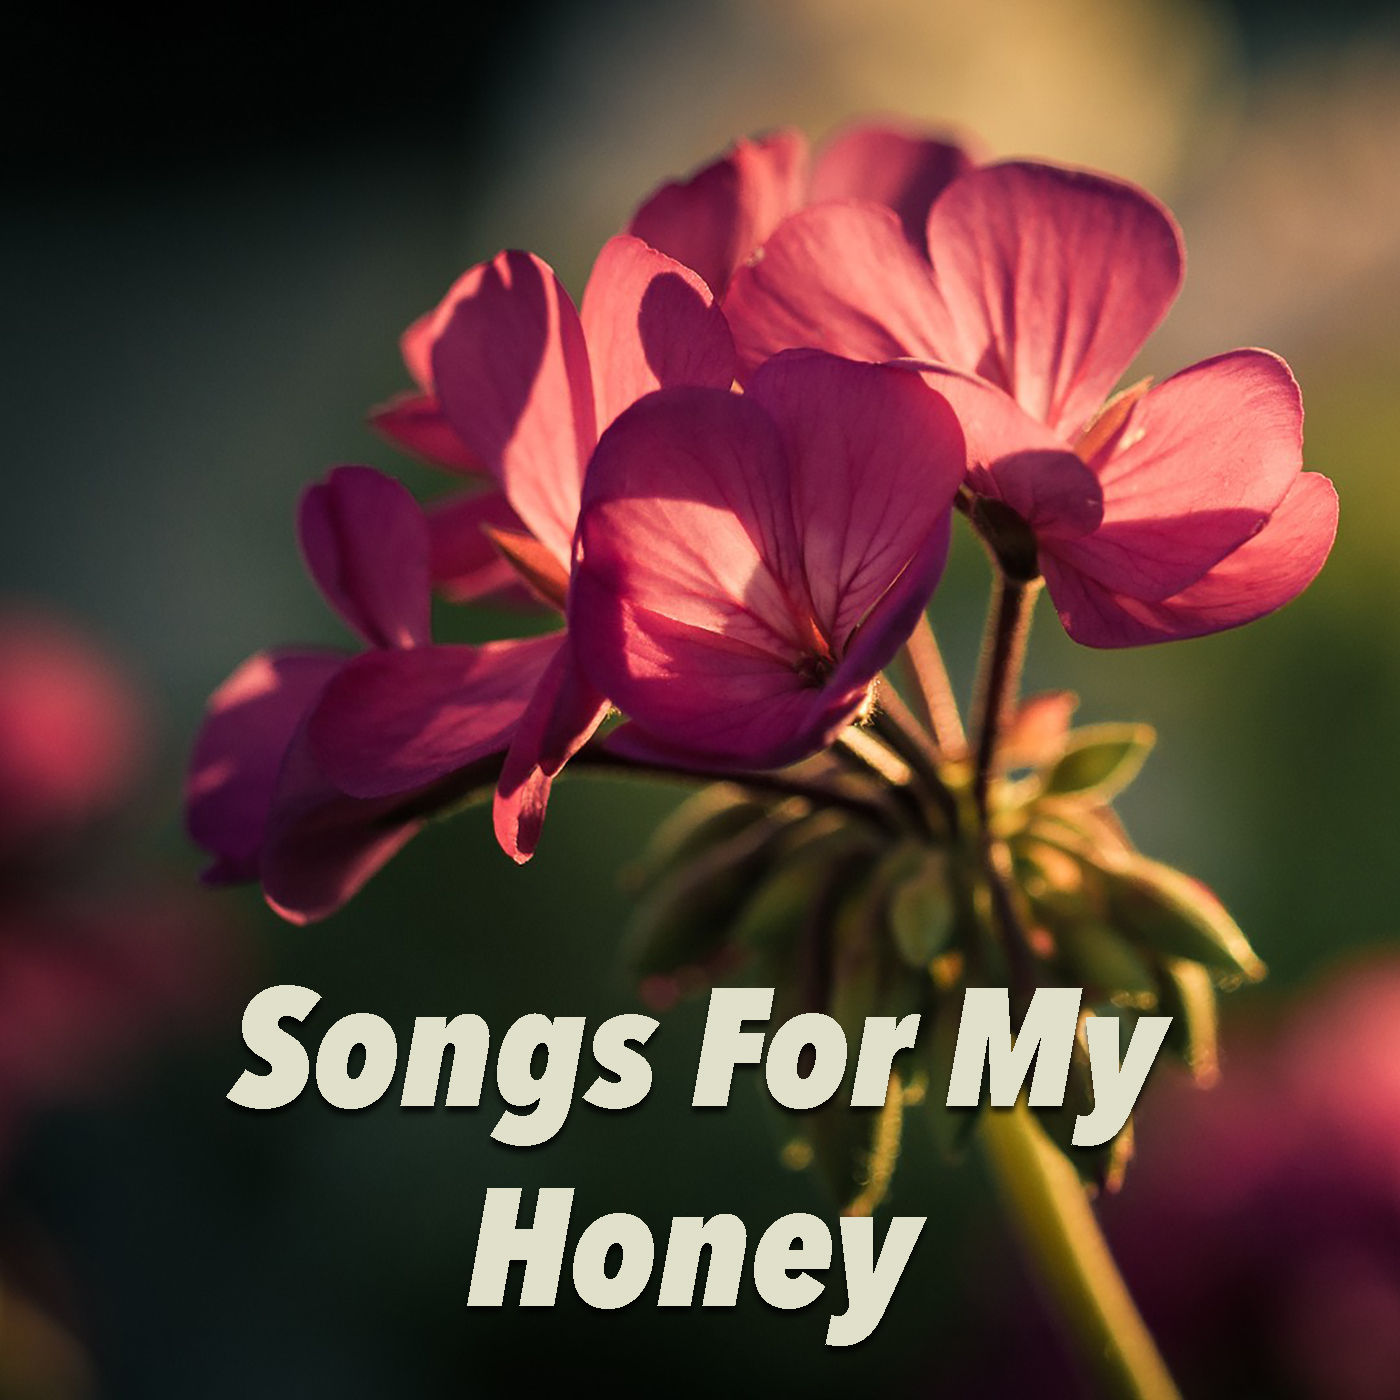 Songs For My Honey